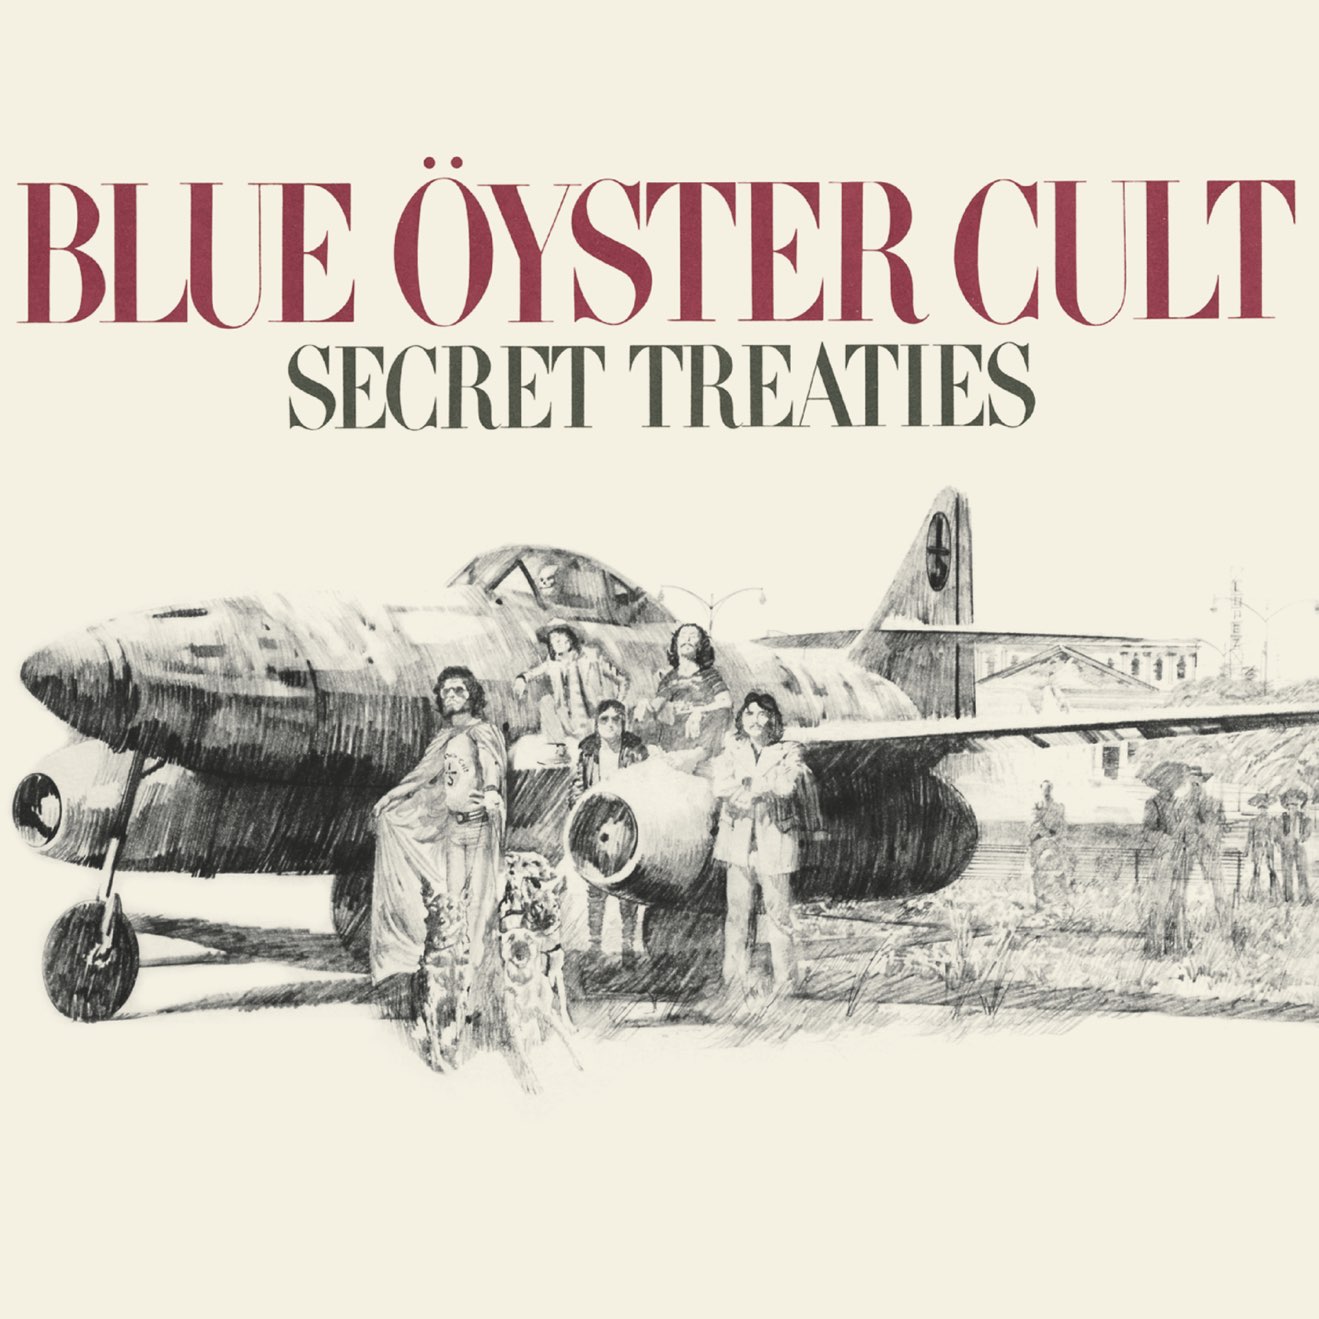 Blue Öyster Cult – Secret Treaties (1974) [iTunes Match M4A]